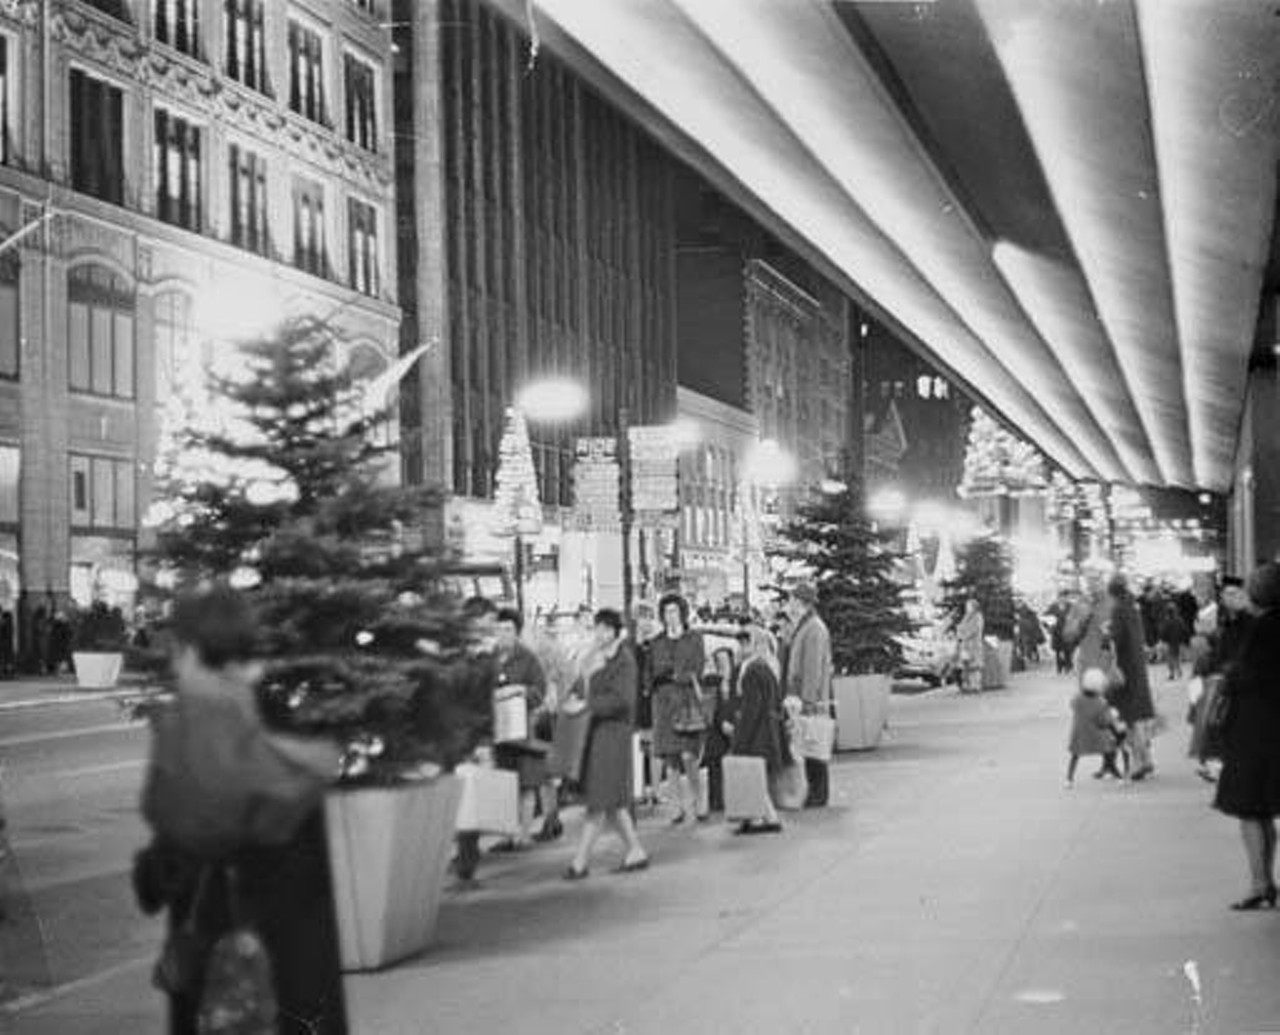 Shoppers outside on Euclid Avenue, 1967.